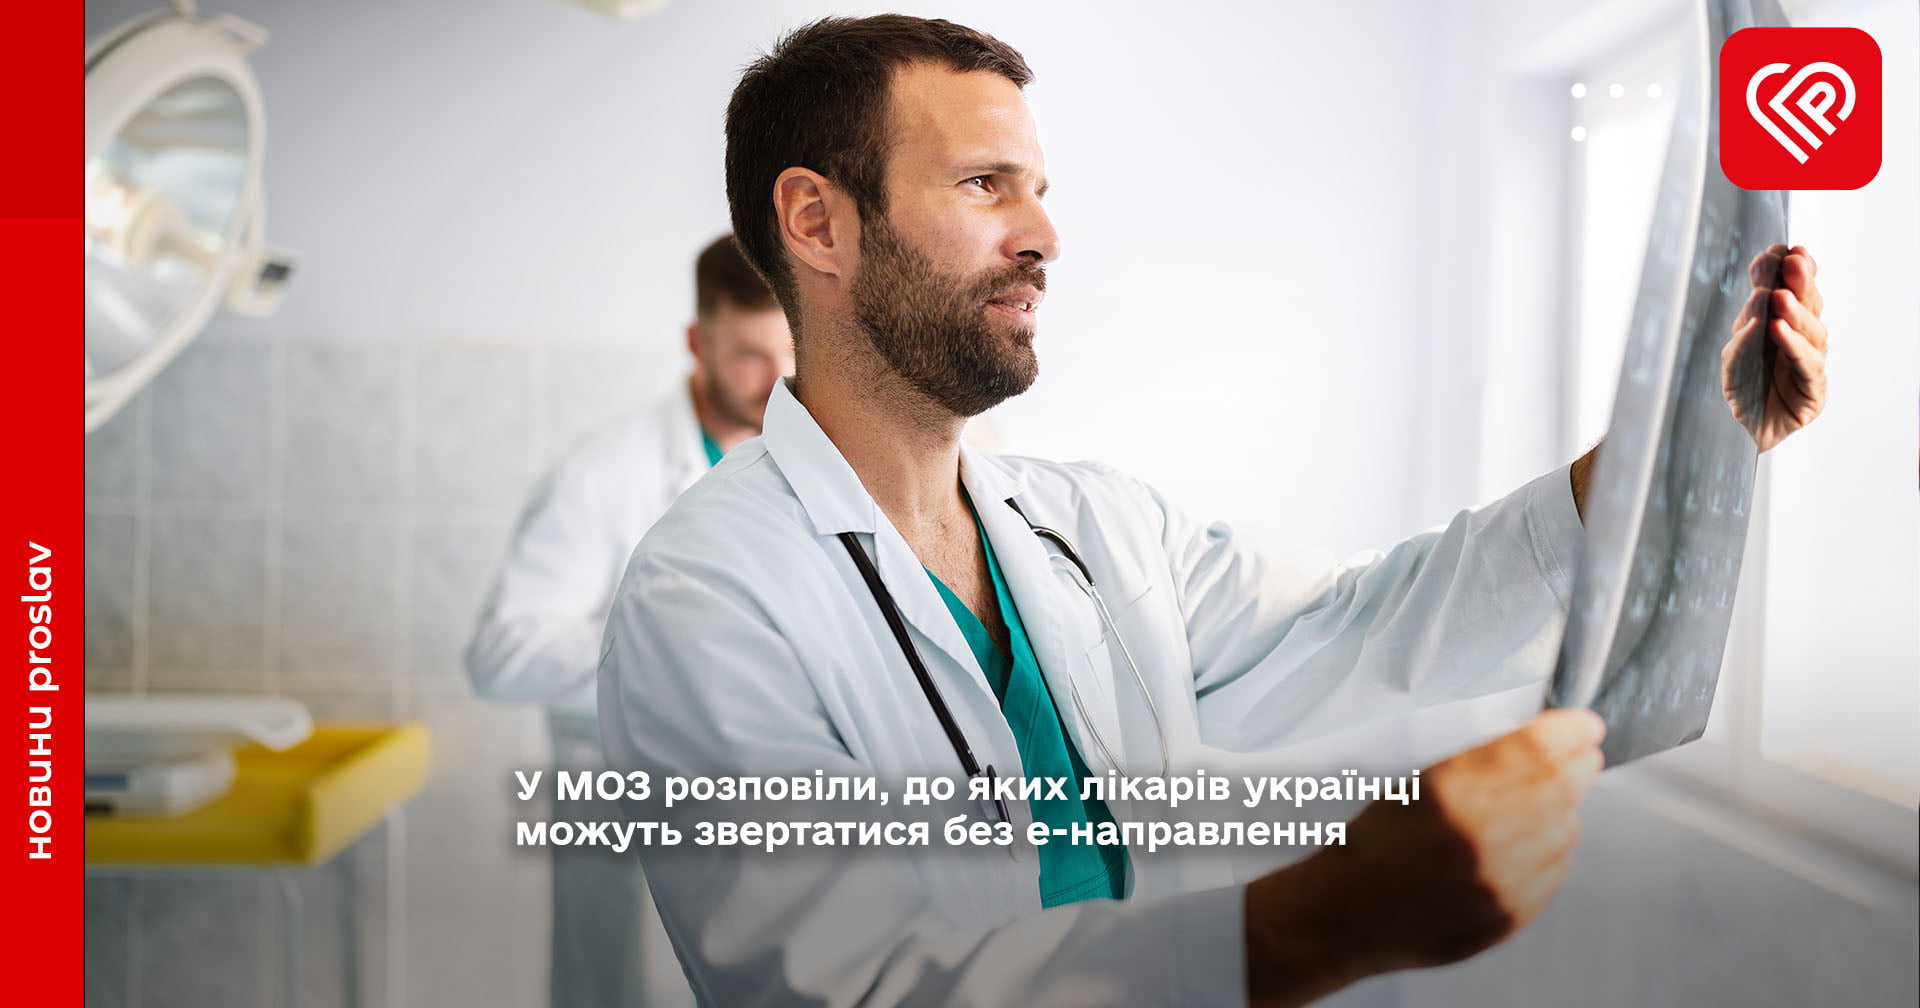 У МОЗ розповіли, до яких лікарів українці можуть звертатися без е-направлення